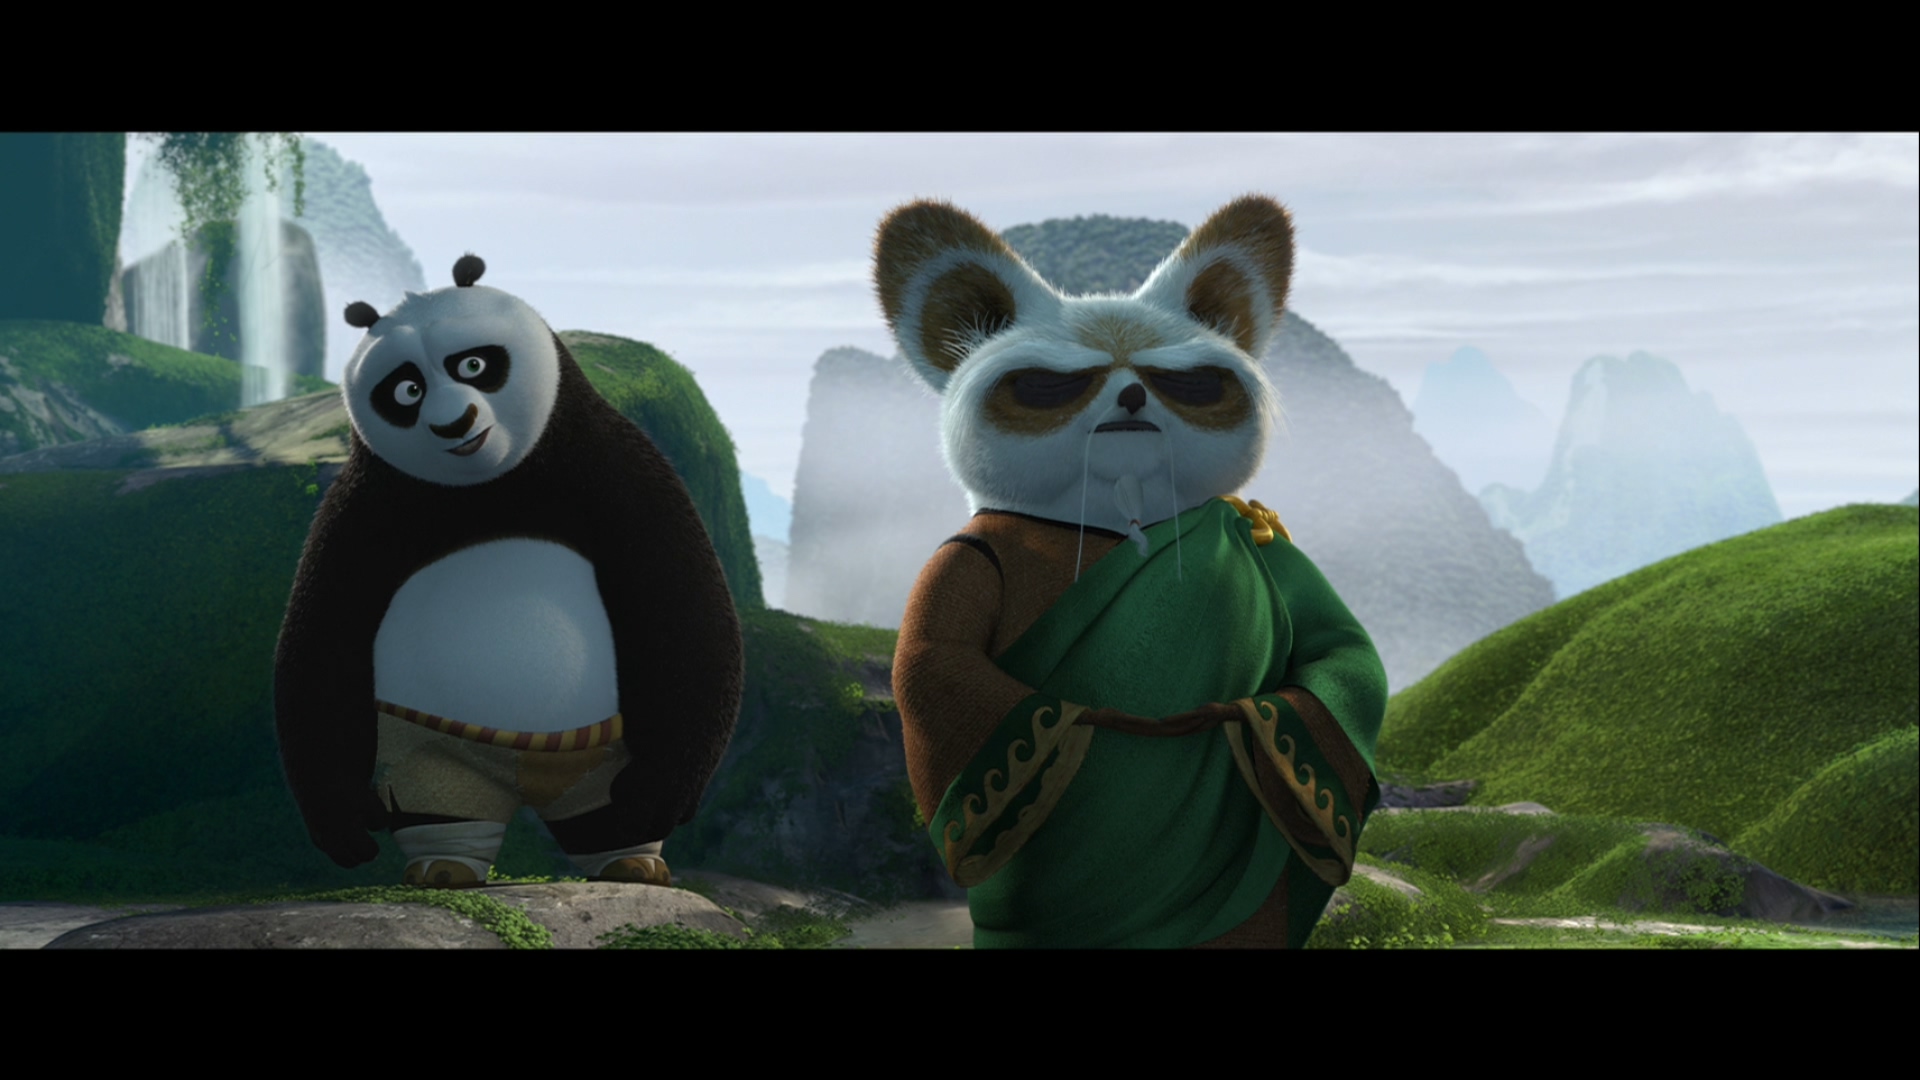 [功夫熊猫2].Kung.Fu.Panda.2.2011.3D.BluRay.1080p.AVC.TrueHD.7.1-LKS   35.53G$  q/ D/ W- f7 C. W0 ~6 s-11.jpg